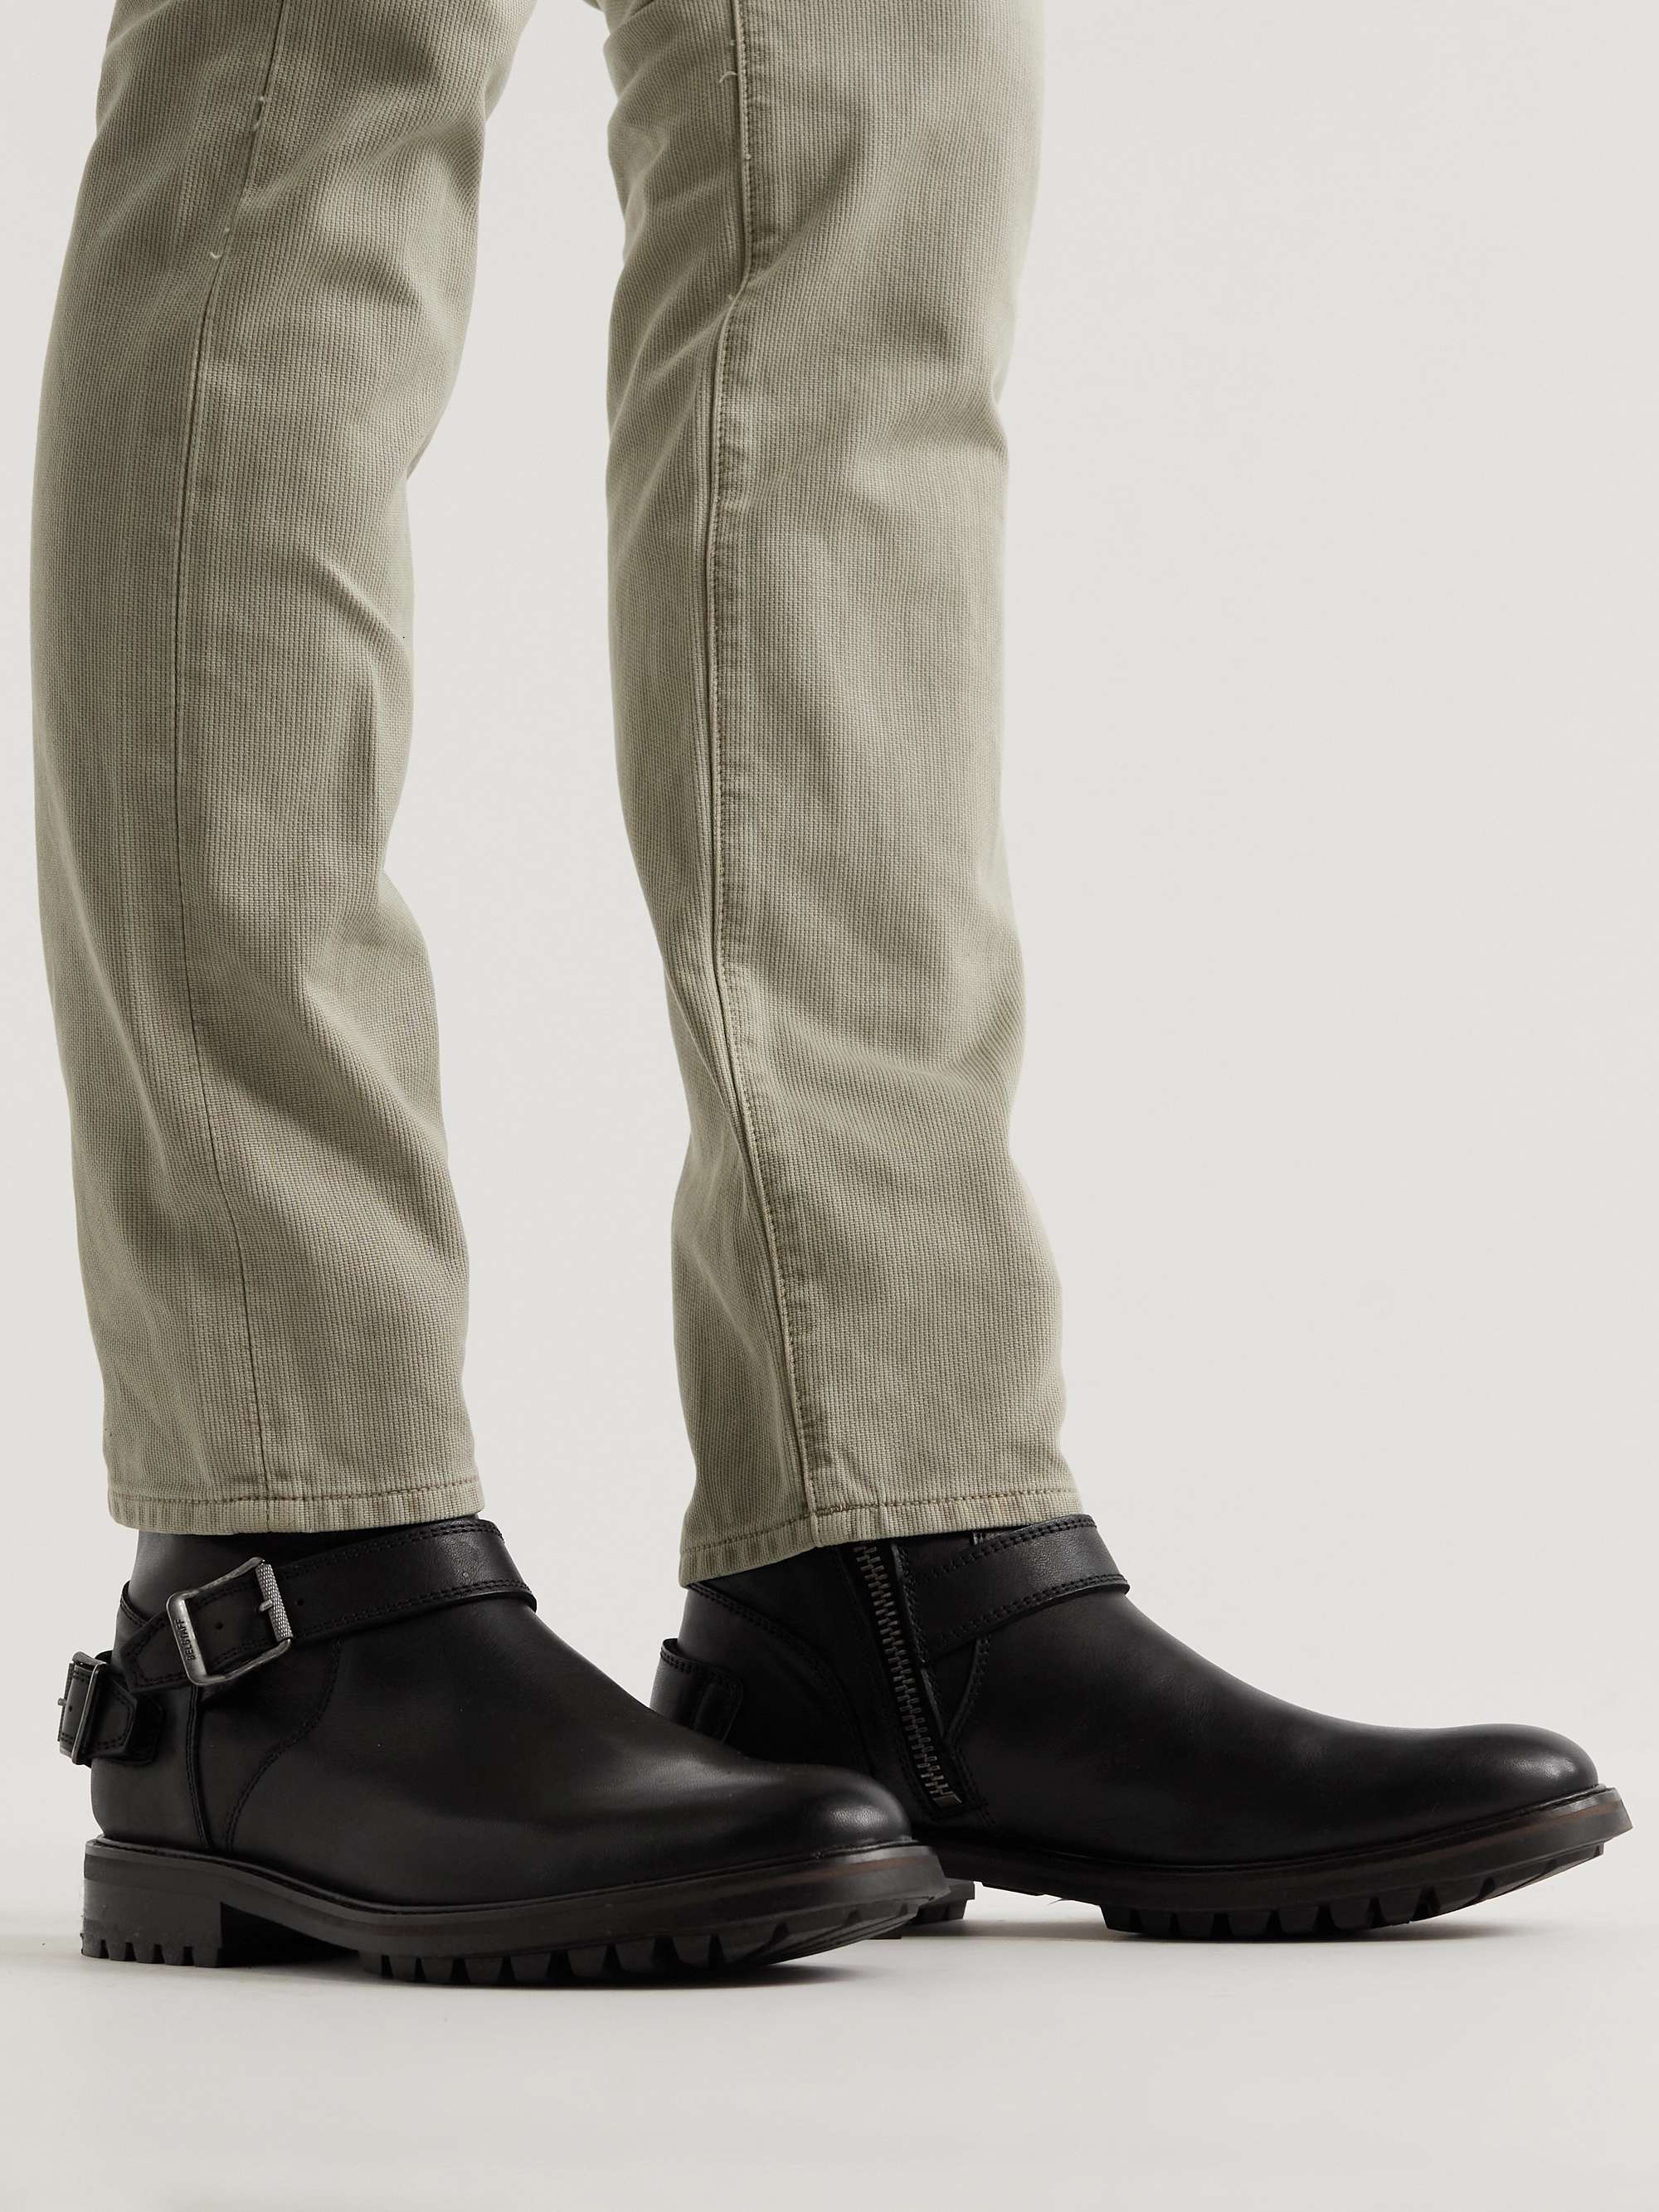 Black Trialmaster Leather Boots | BELSTAFF | MR PORTER